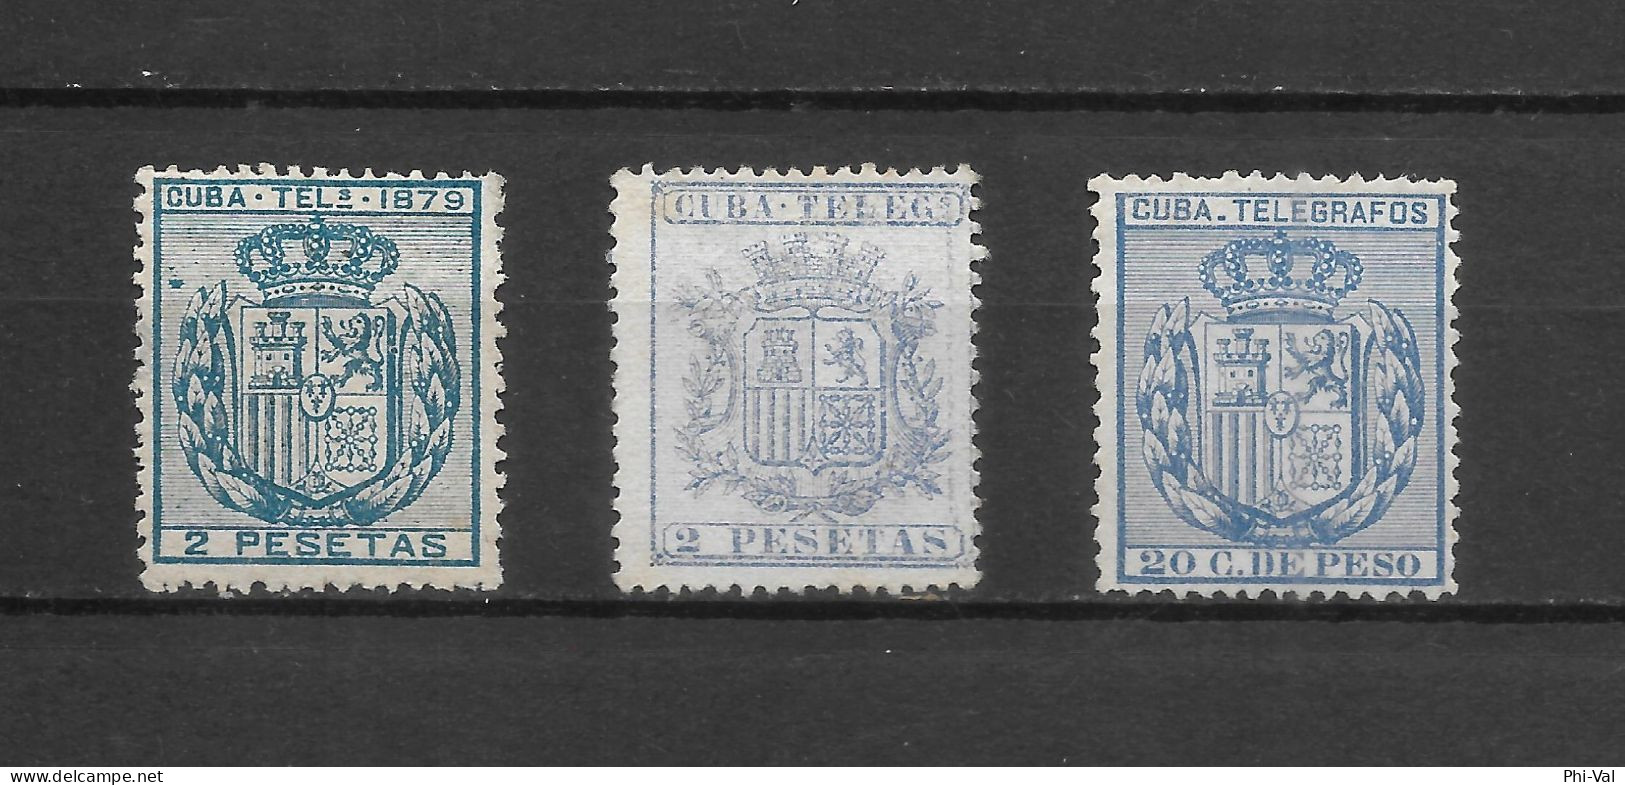 (LOT349) Cuba Telegraph Stamps. 1875-1896. VF MLH - Telegraphenmarken